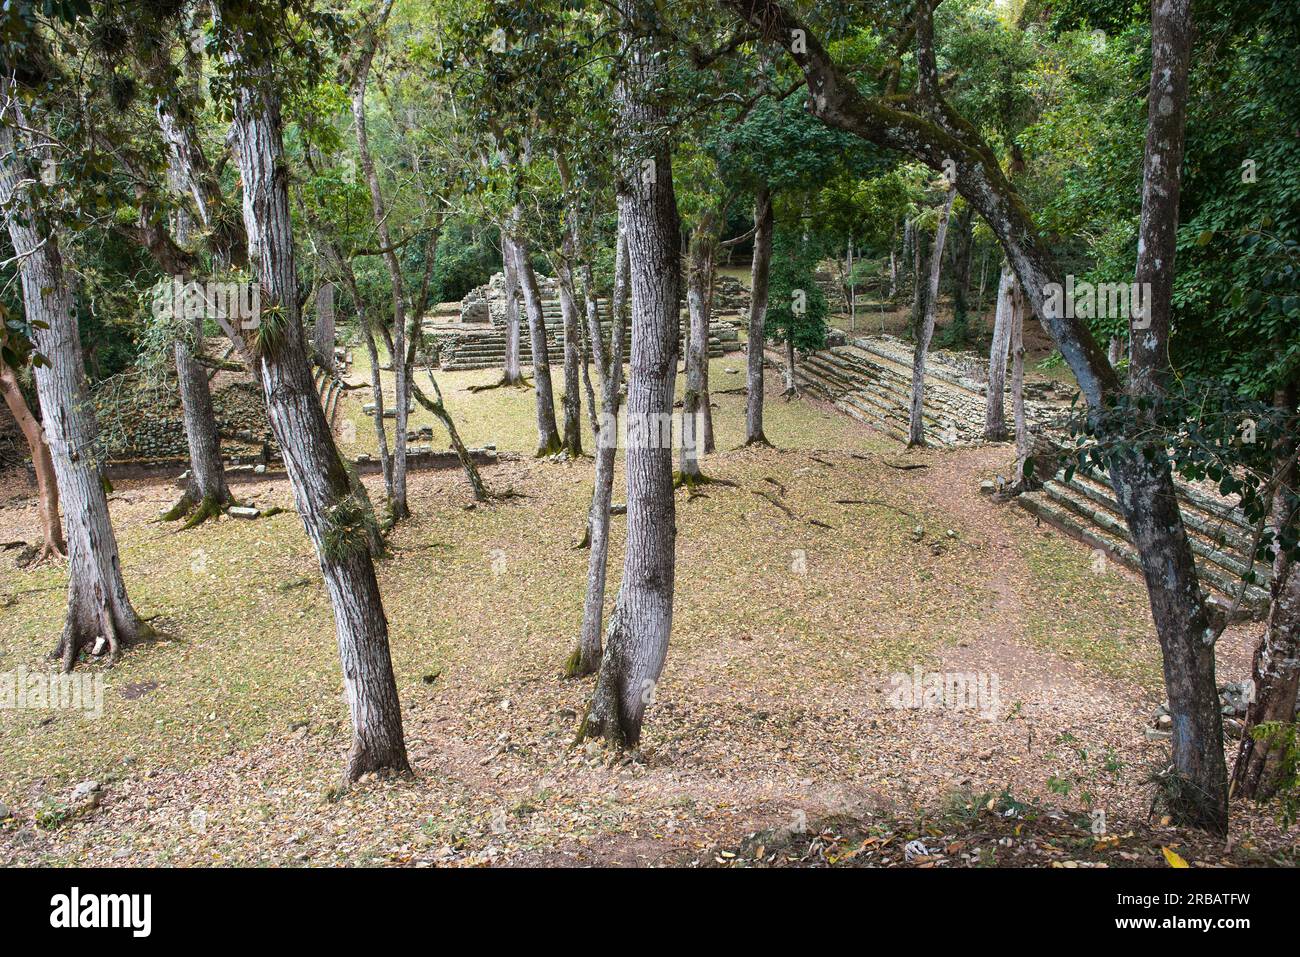 View of Area Residencial and El Cementerio, upper class residential area and burial site, Sitio Arqueologico de Copan, Copan Ruinas, Honduras Stock Photo